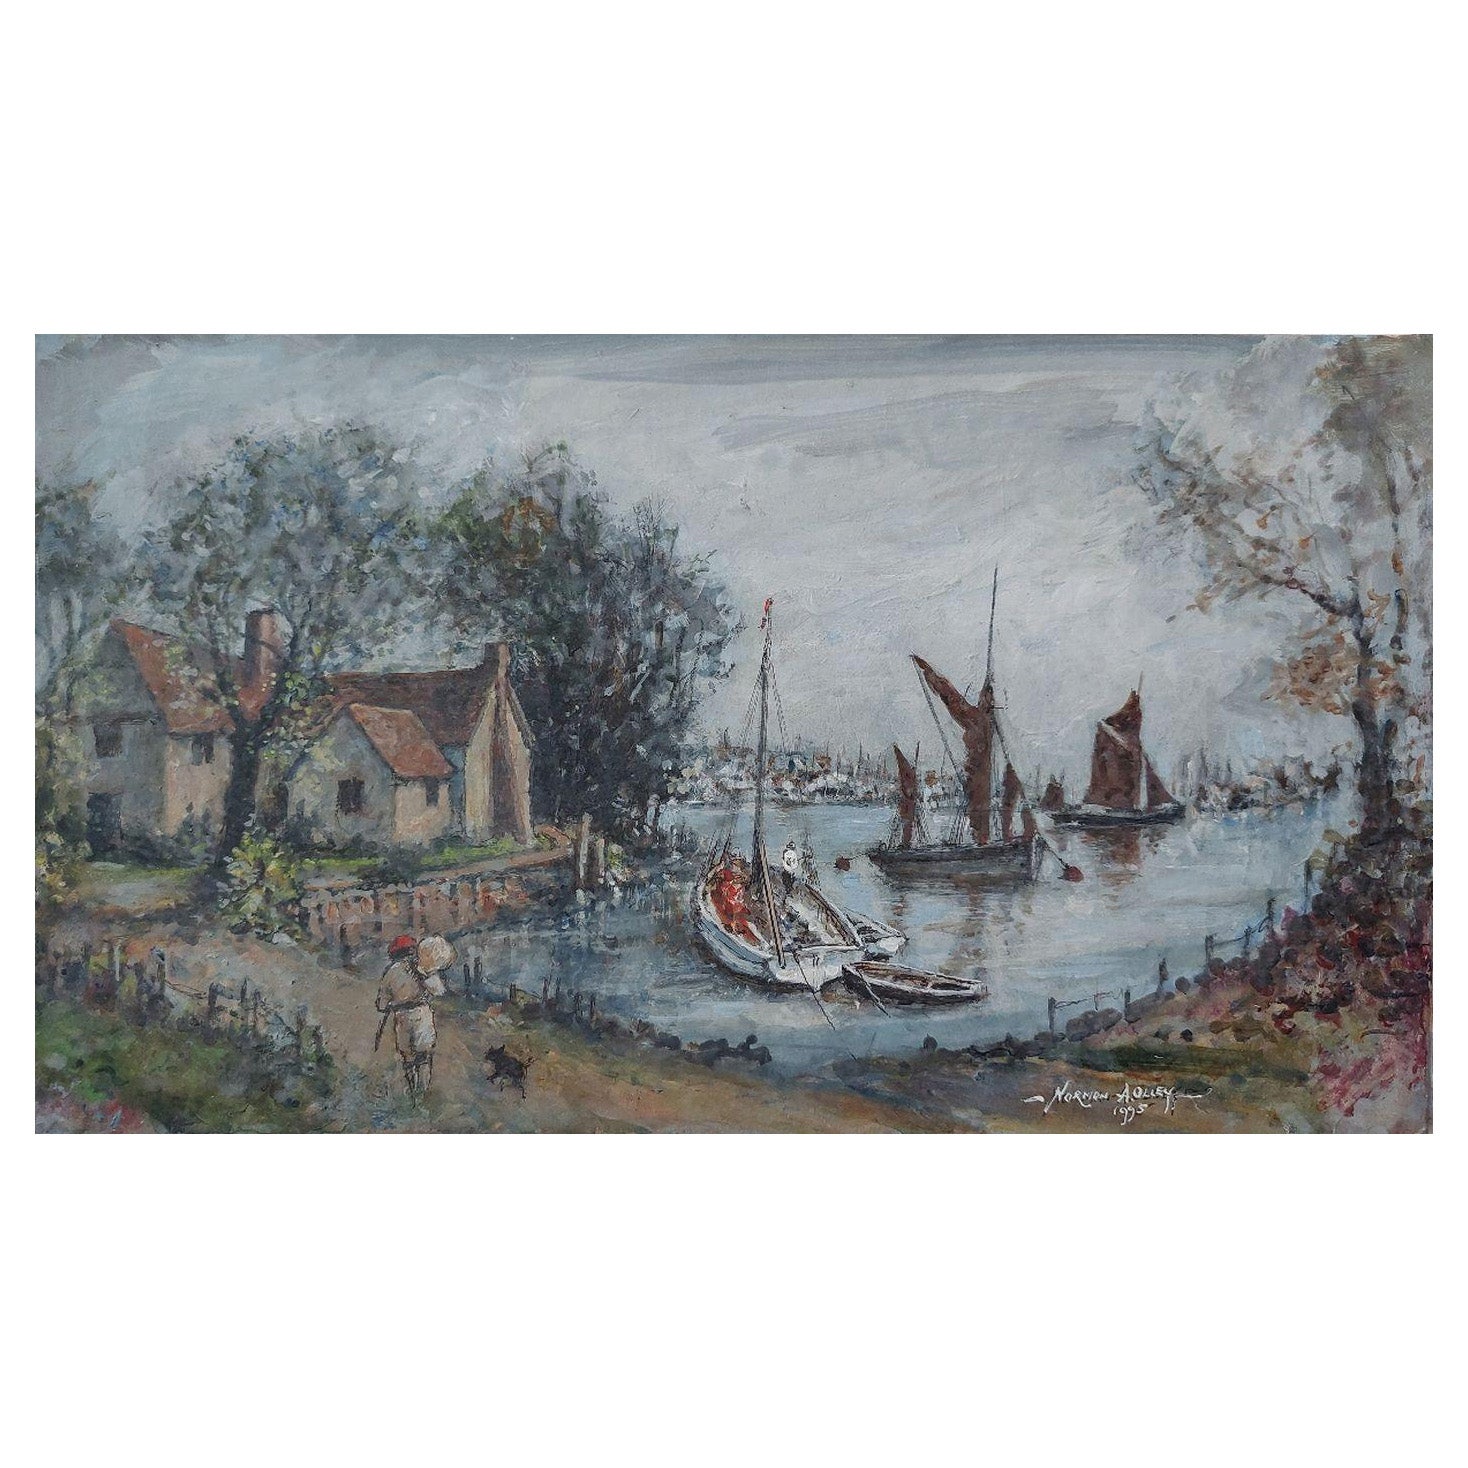 Peinture traditionnelle anglaise de scène maritime sur la rivière Medway, Kent, Angleterre